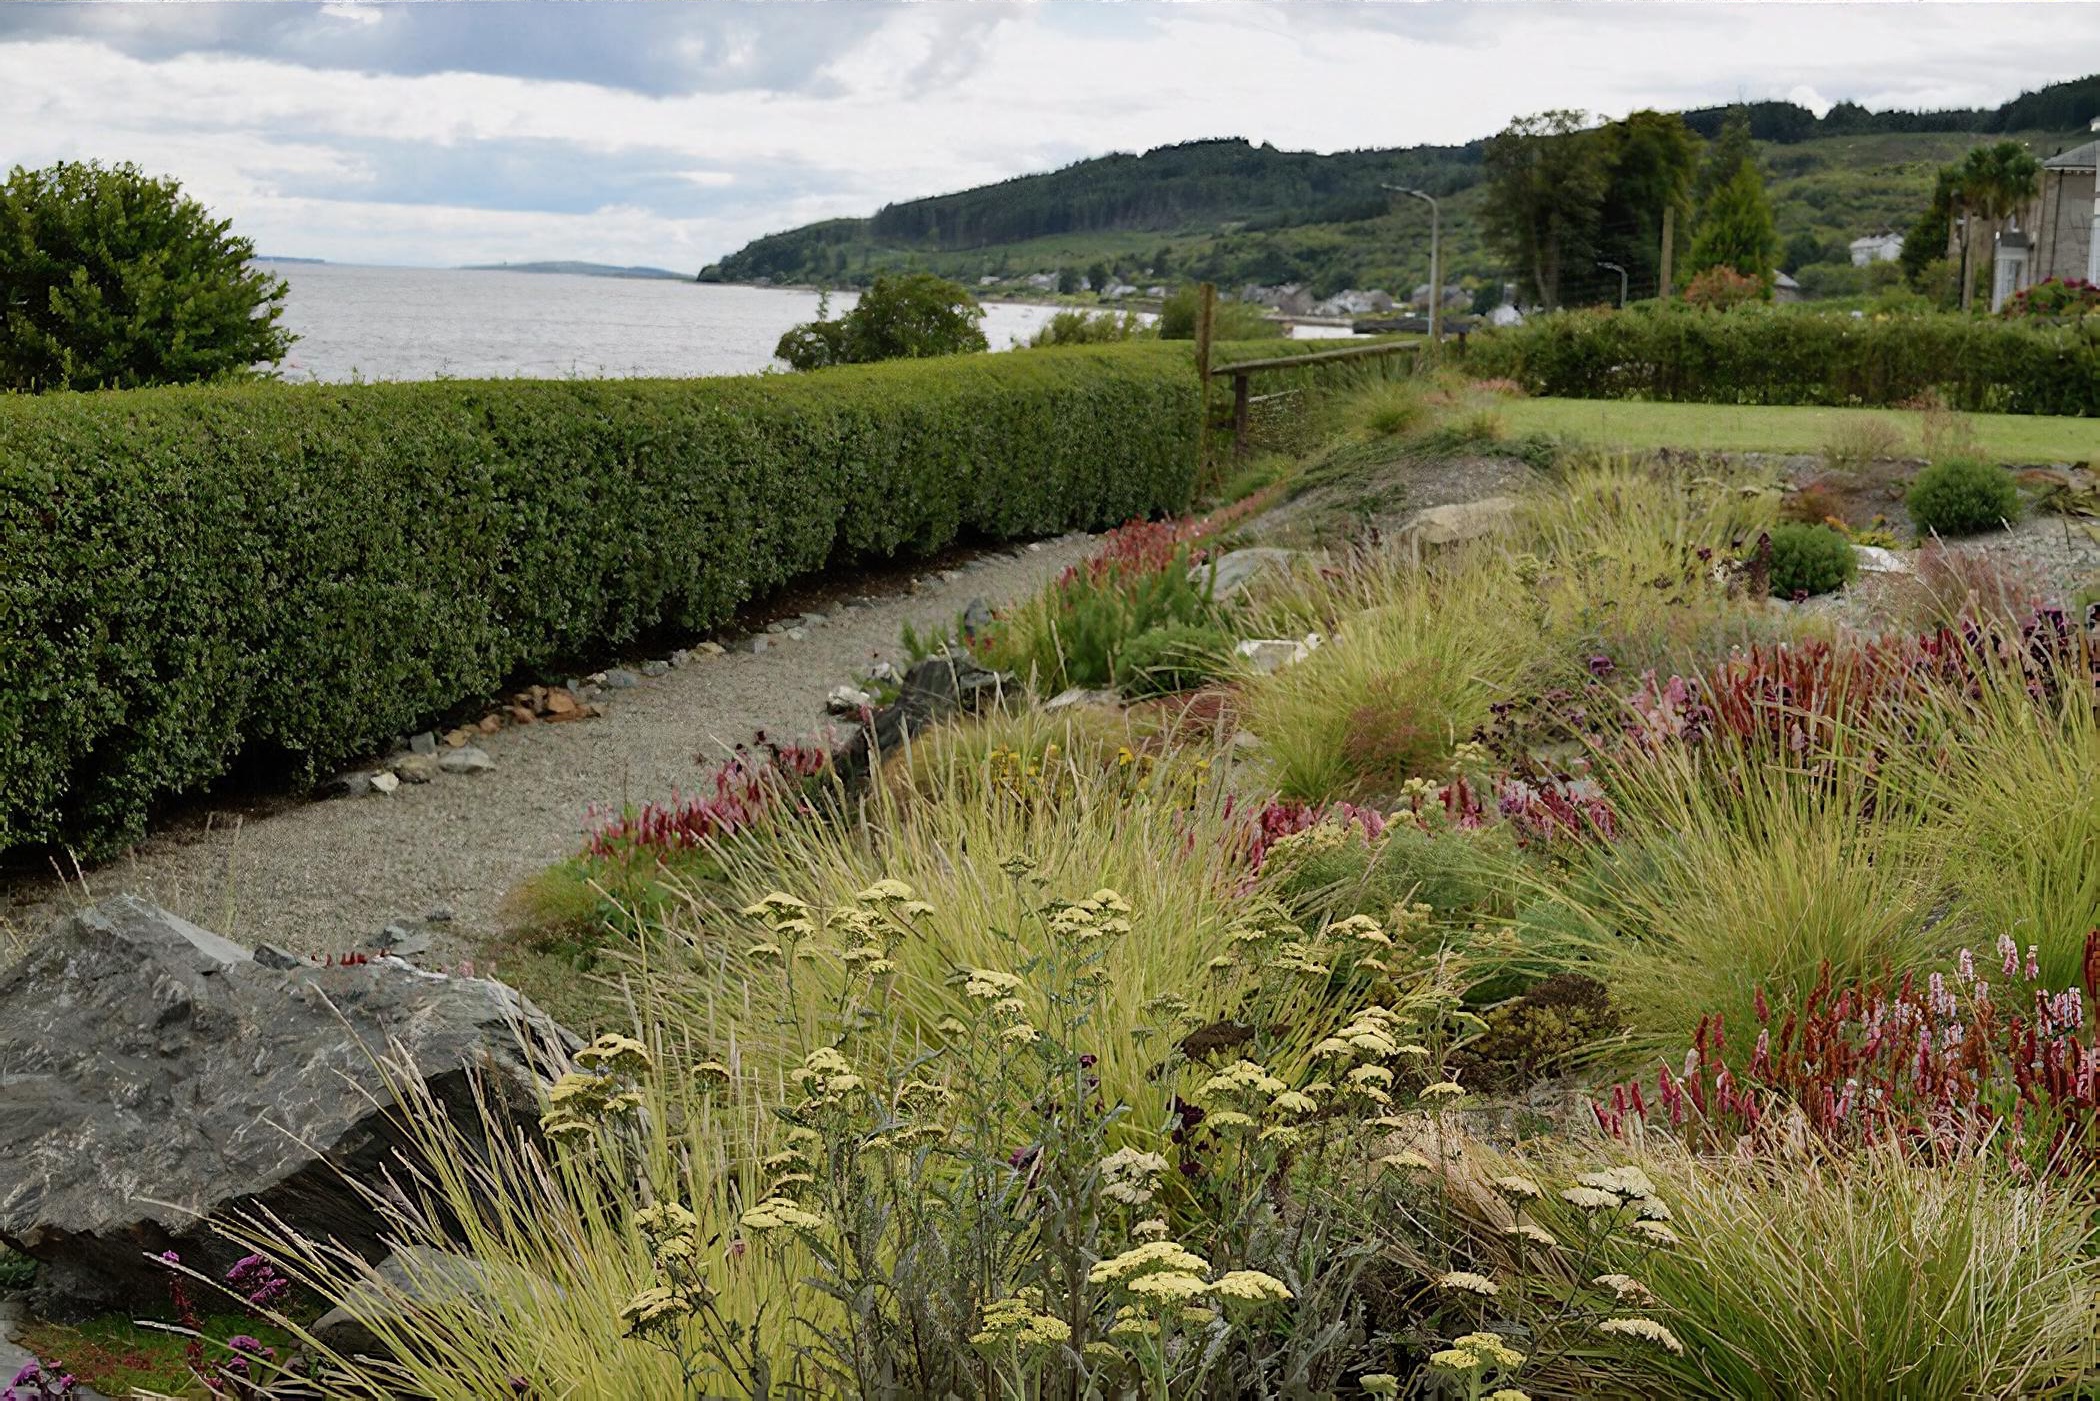 Exposed Coastal Garden by Scotland based garden designer Rachel Bailey